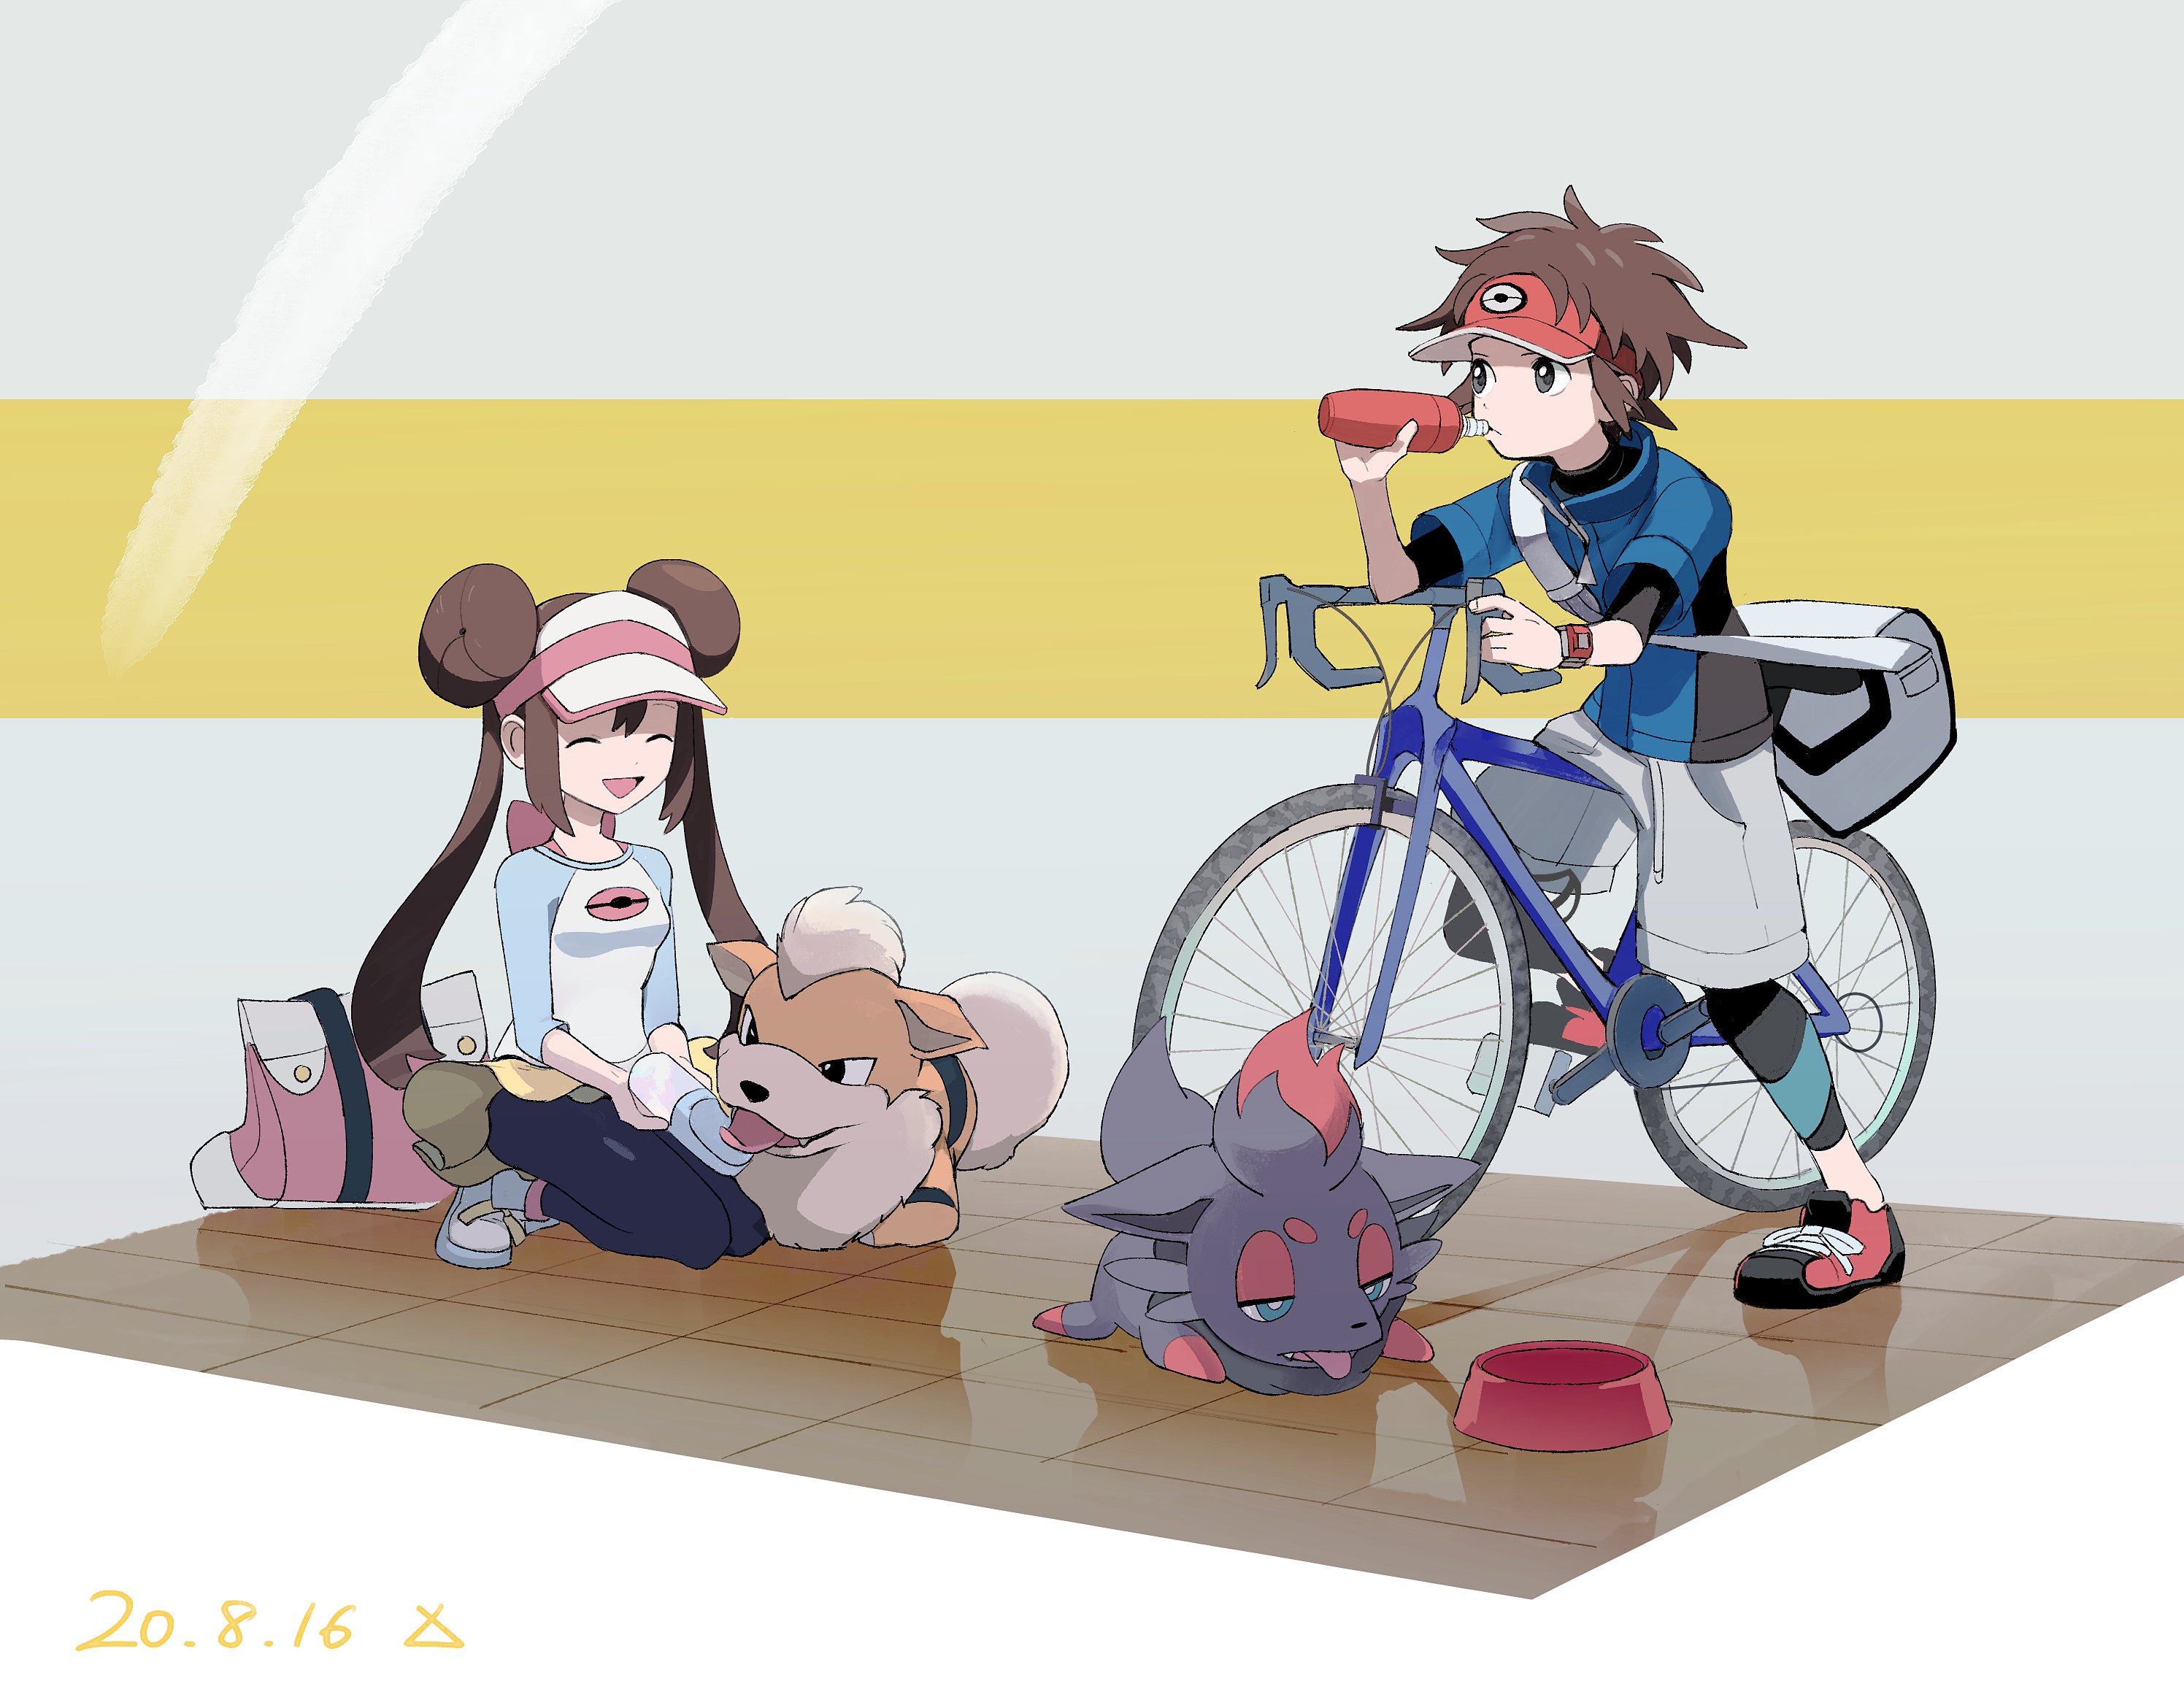 video game, pokemon: black and white 2, bike, brown hair, drinking, growlithe (pokémon), nate (pokémon), rosa (pokemon), zorua (pokémon), pokémon